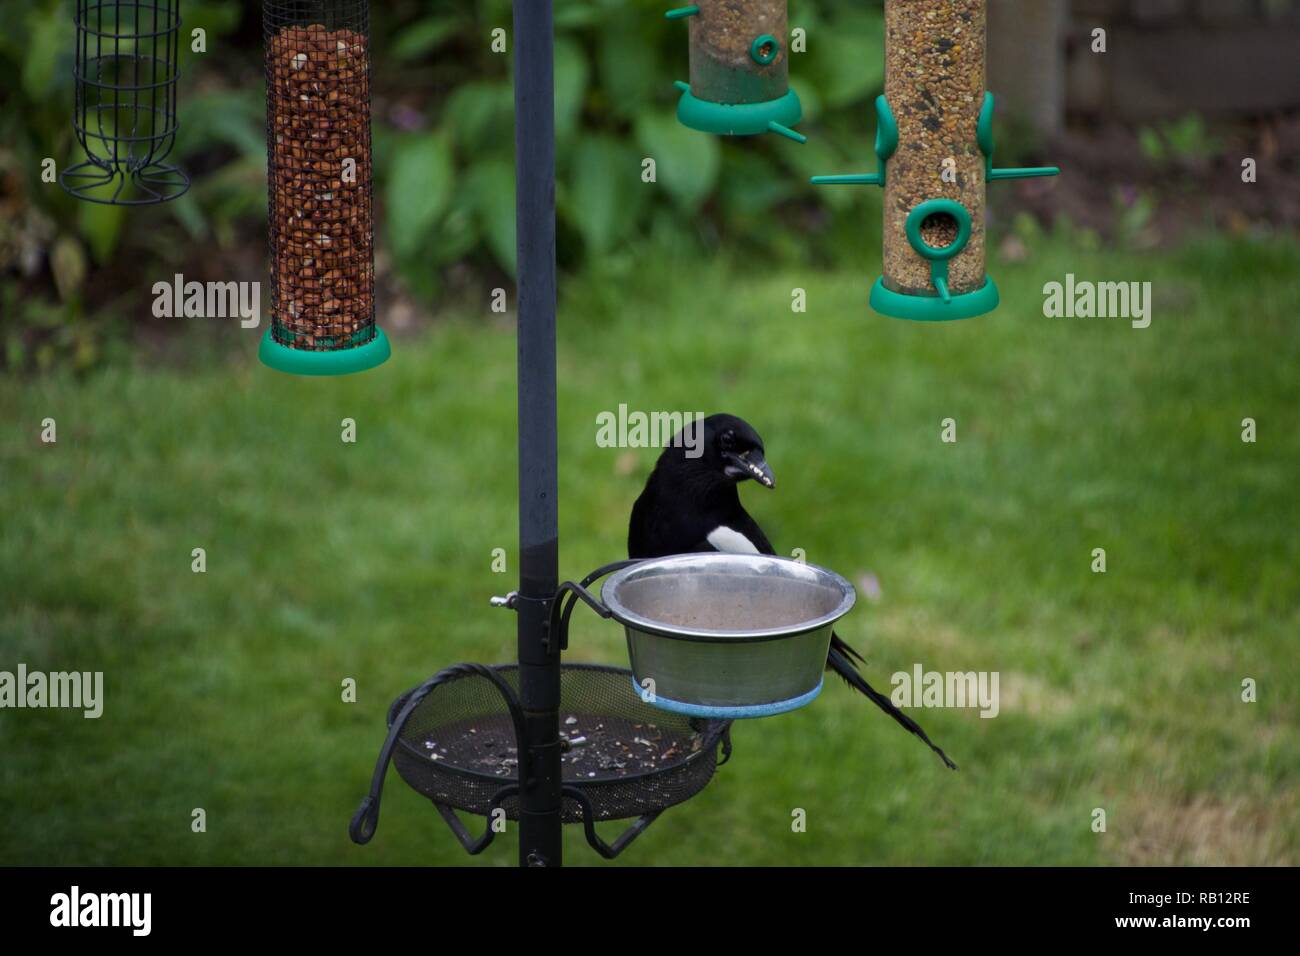 Una gazza sorge su un giardino bird feeder, il peering quizzically in un recipiente di acqua Foto Stock